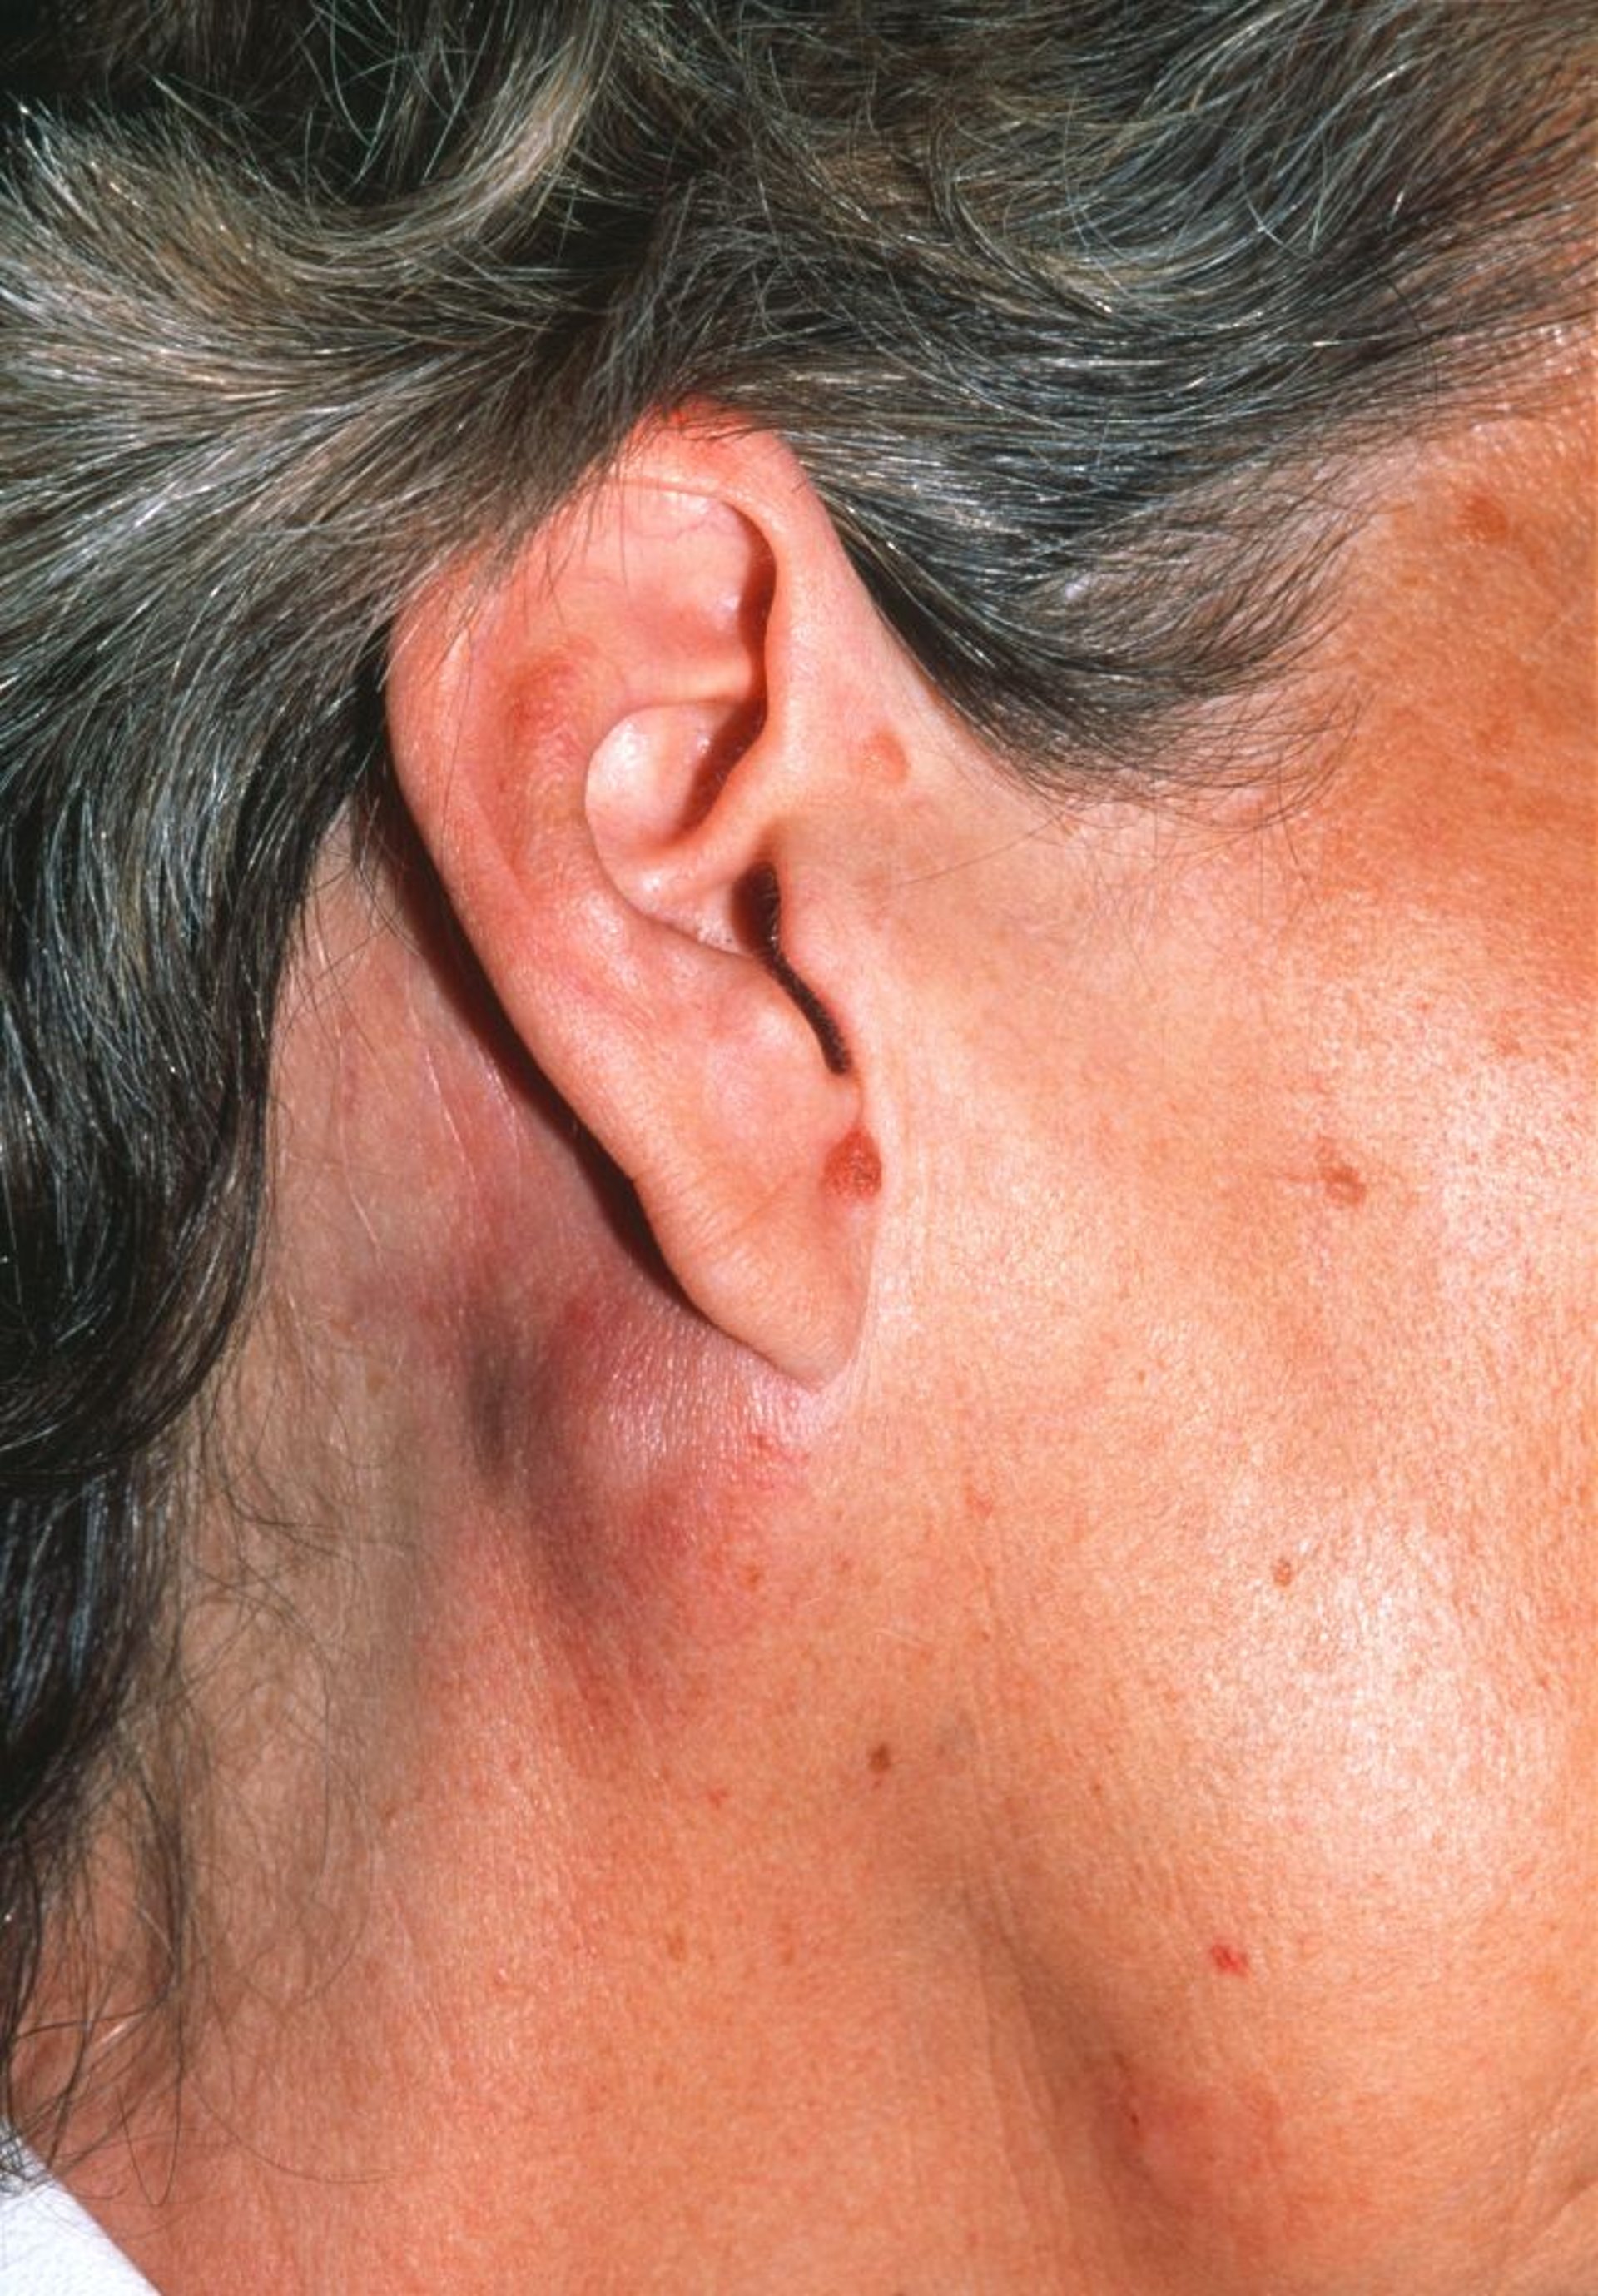 Неходжкинская лимфома (задняя аурикулярная лимфаденопатия)